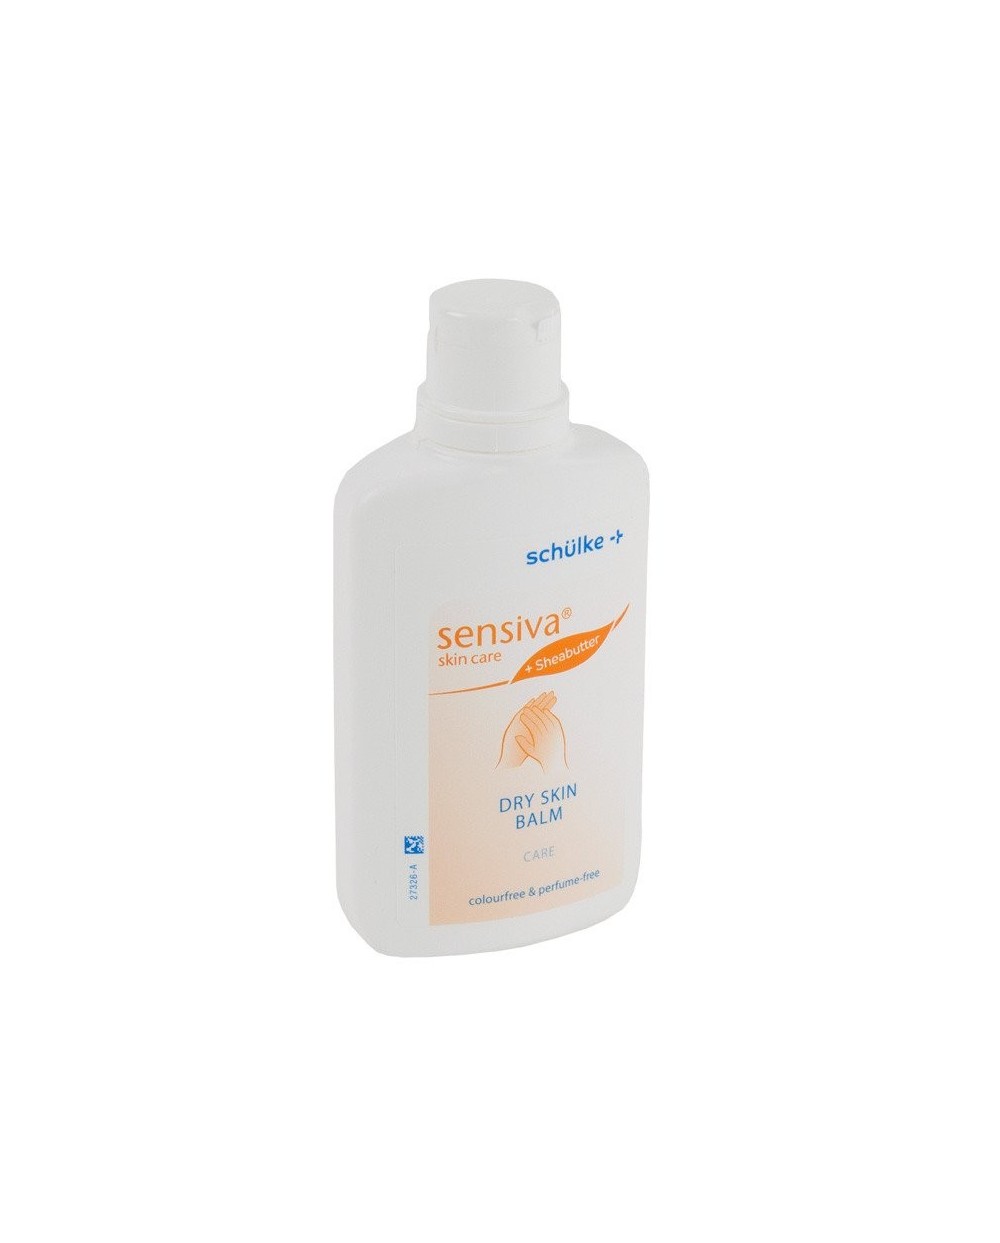 sensiva® dry skin balm 150 ml Tube